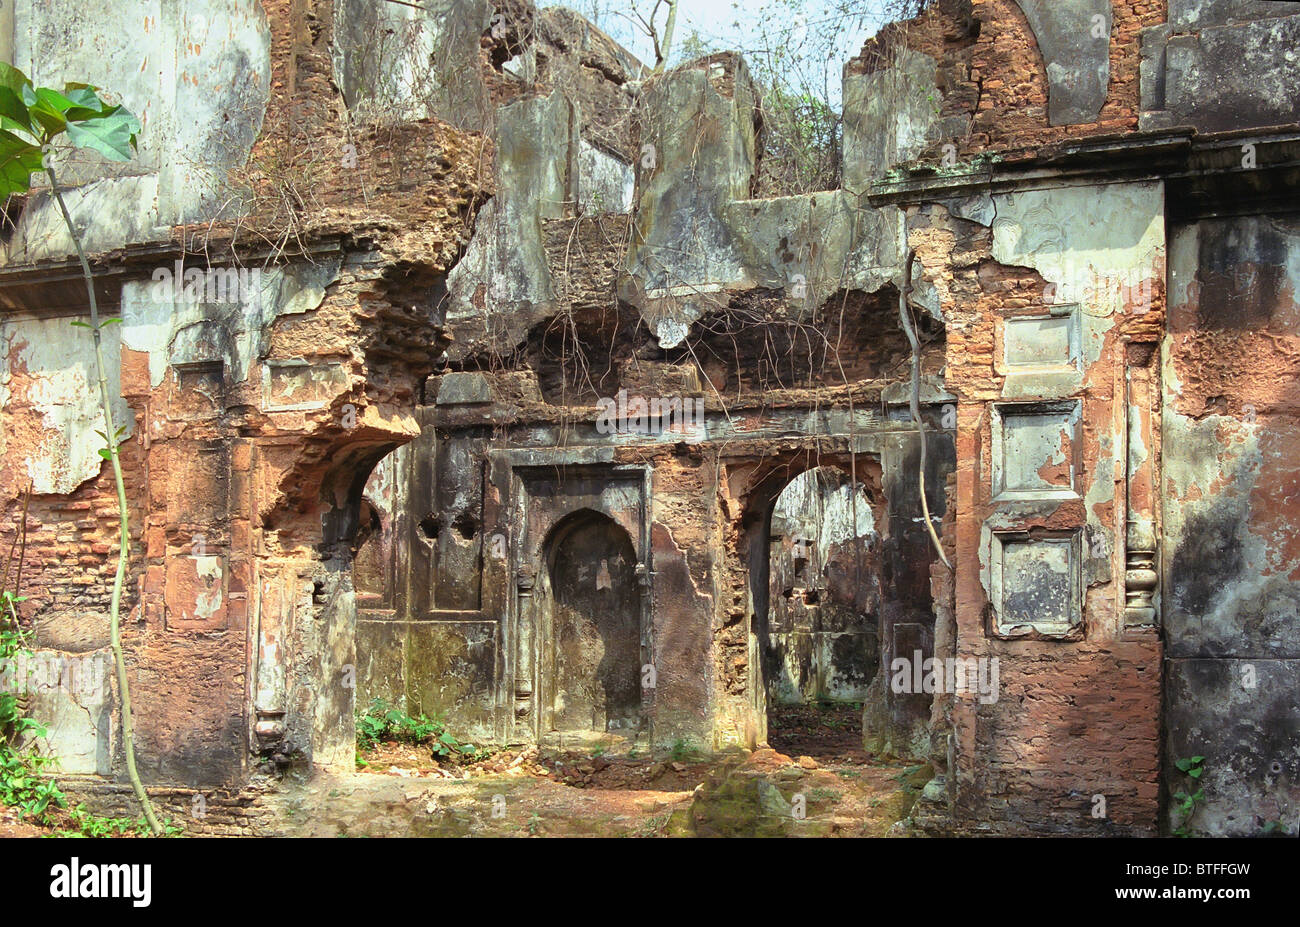 Ruines d'un ancien temple hindou dans une zone rurale du Bangladesh. Banque D'Images